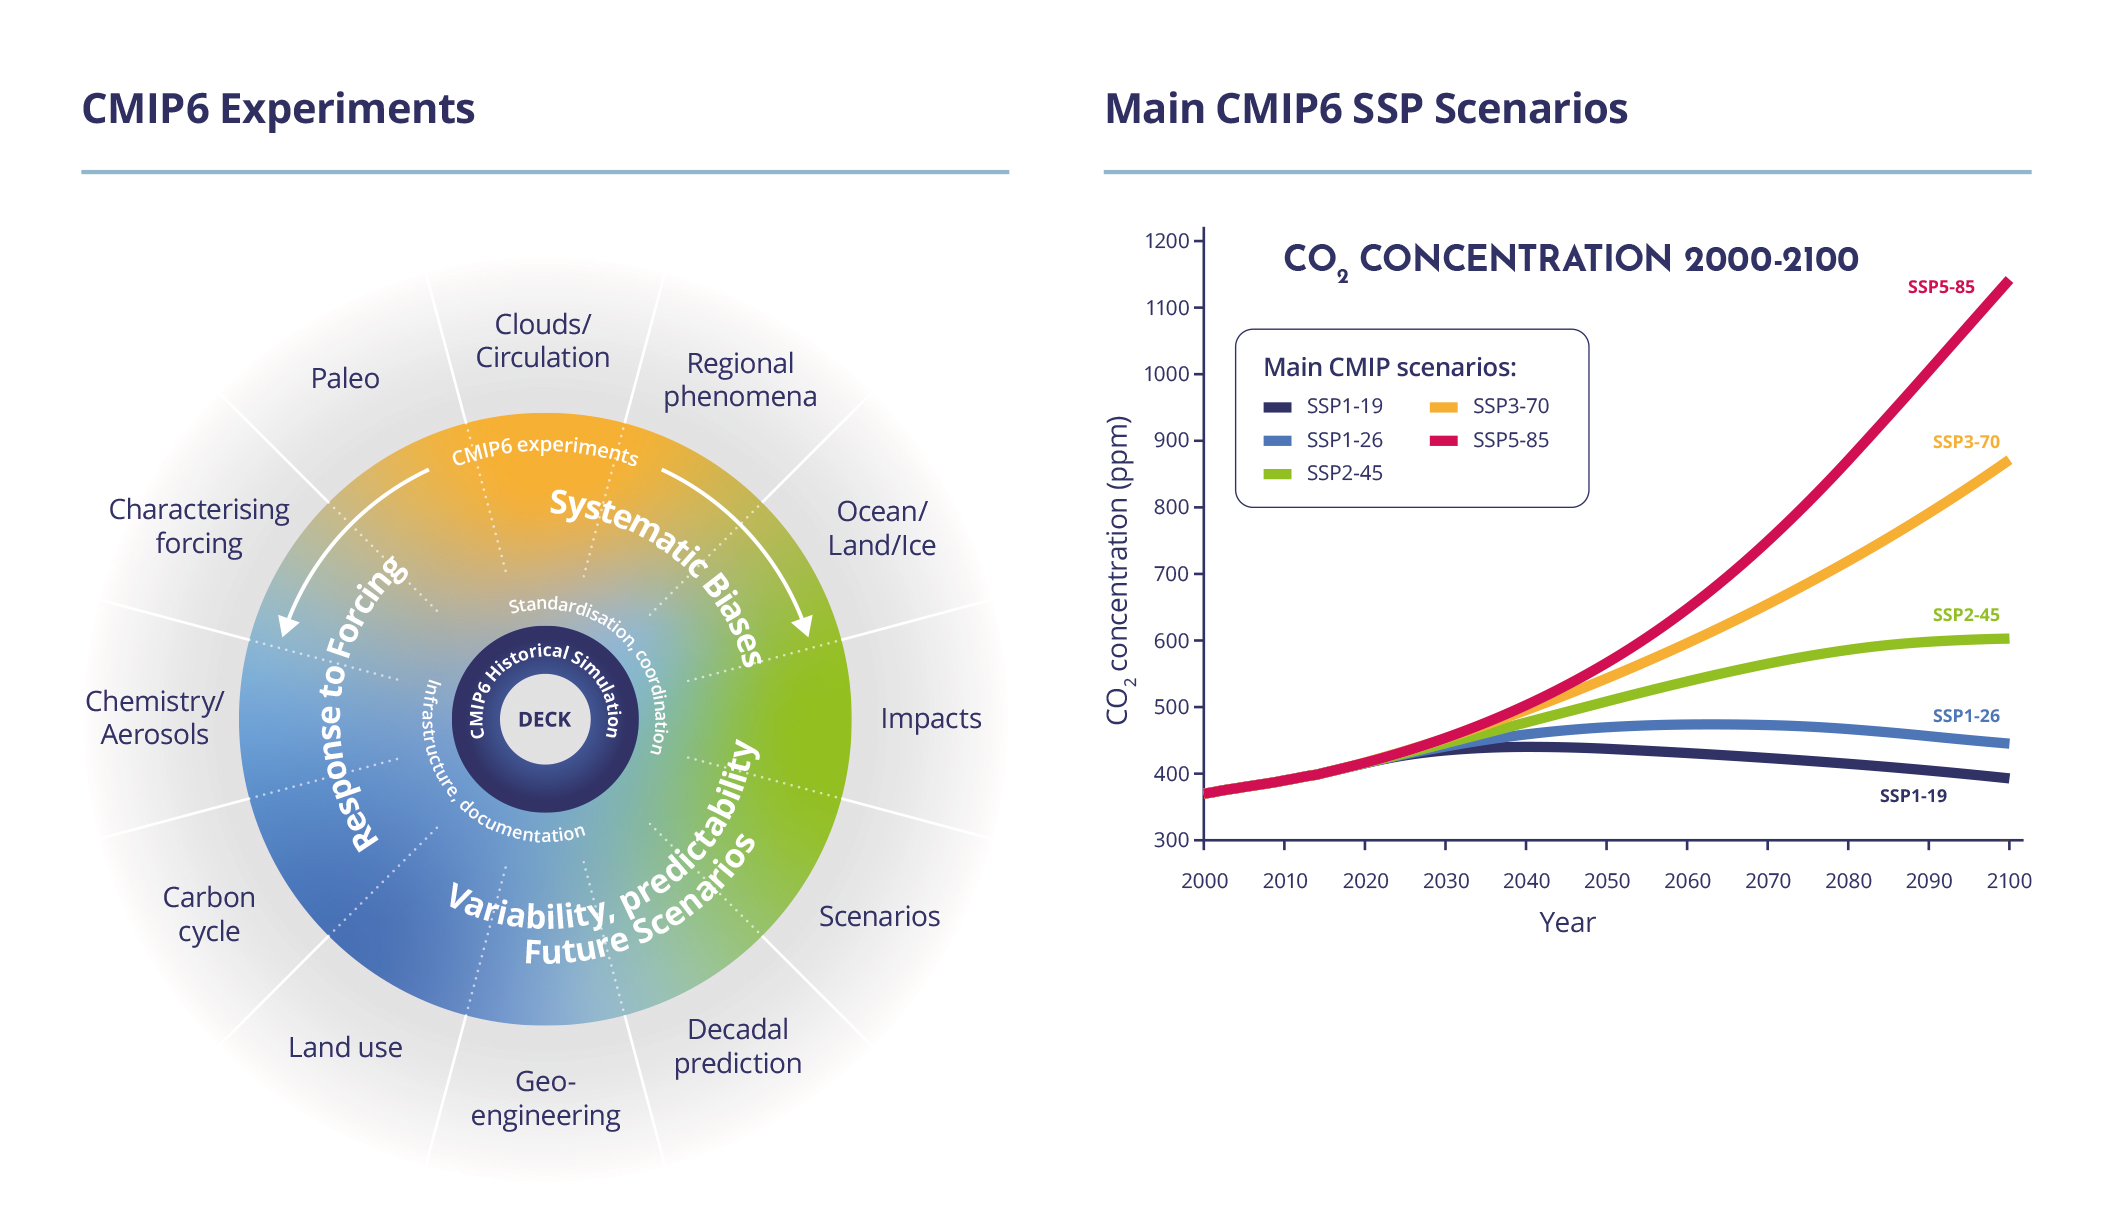 Figure 4: Key aspects of CMIP6